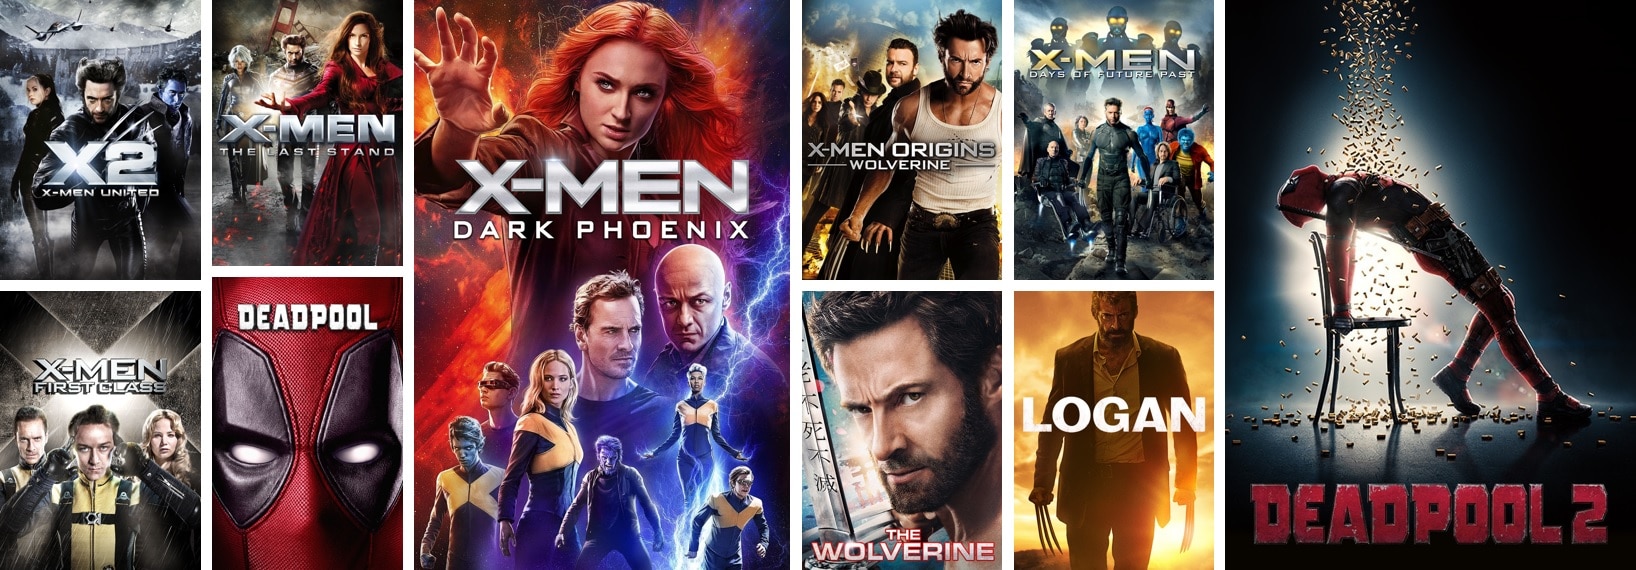 Alle X-Men Filme in der richtigen Reihenfolge